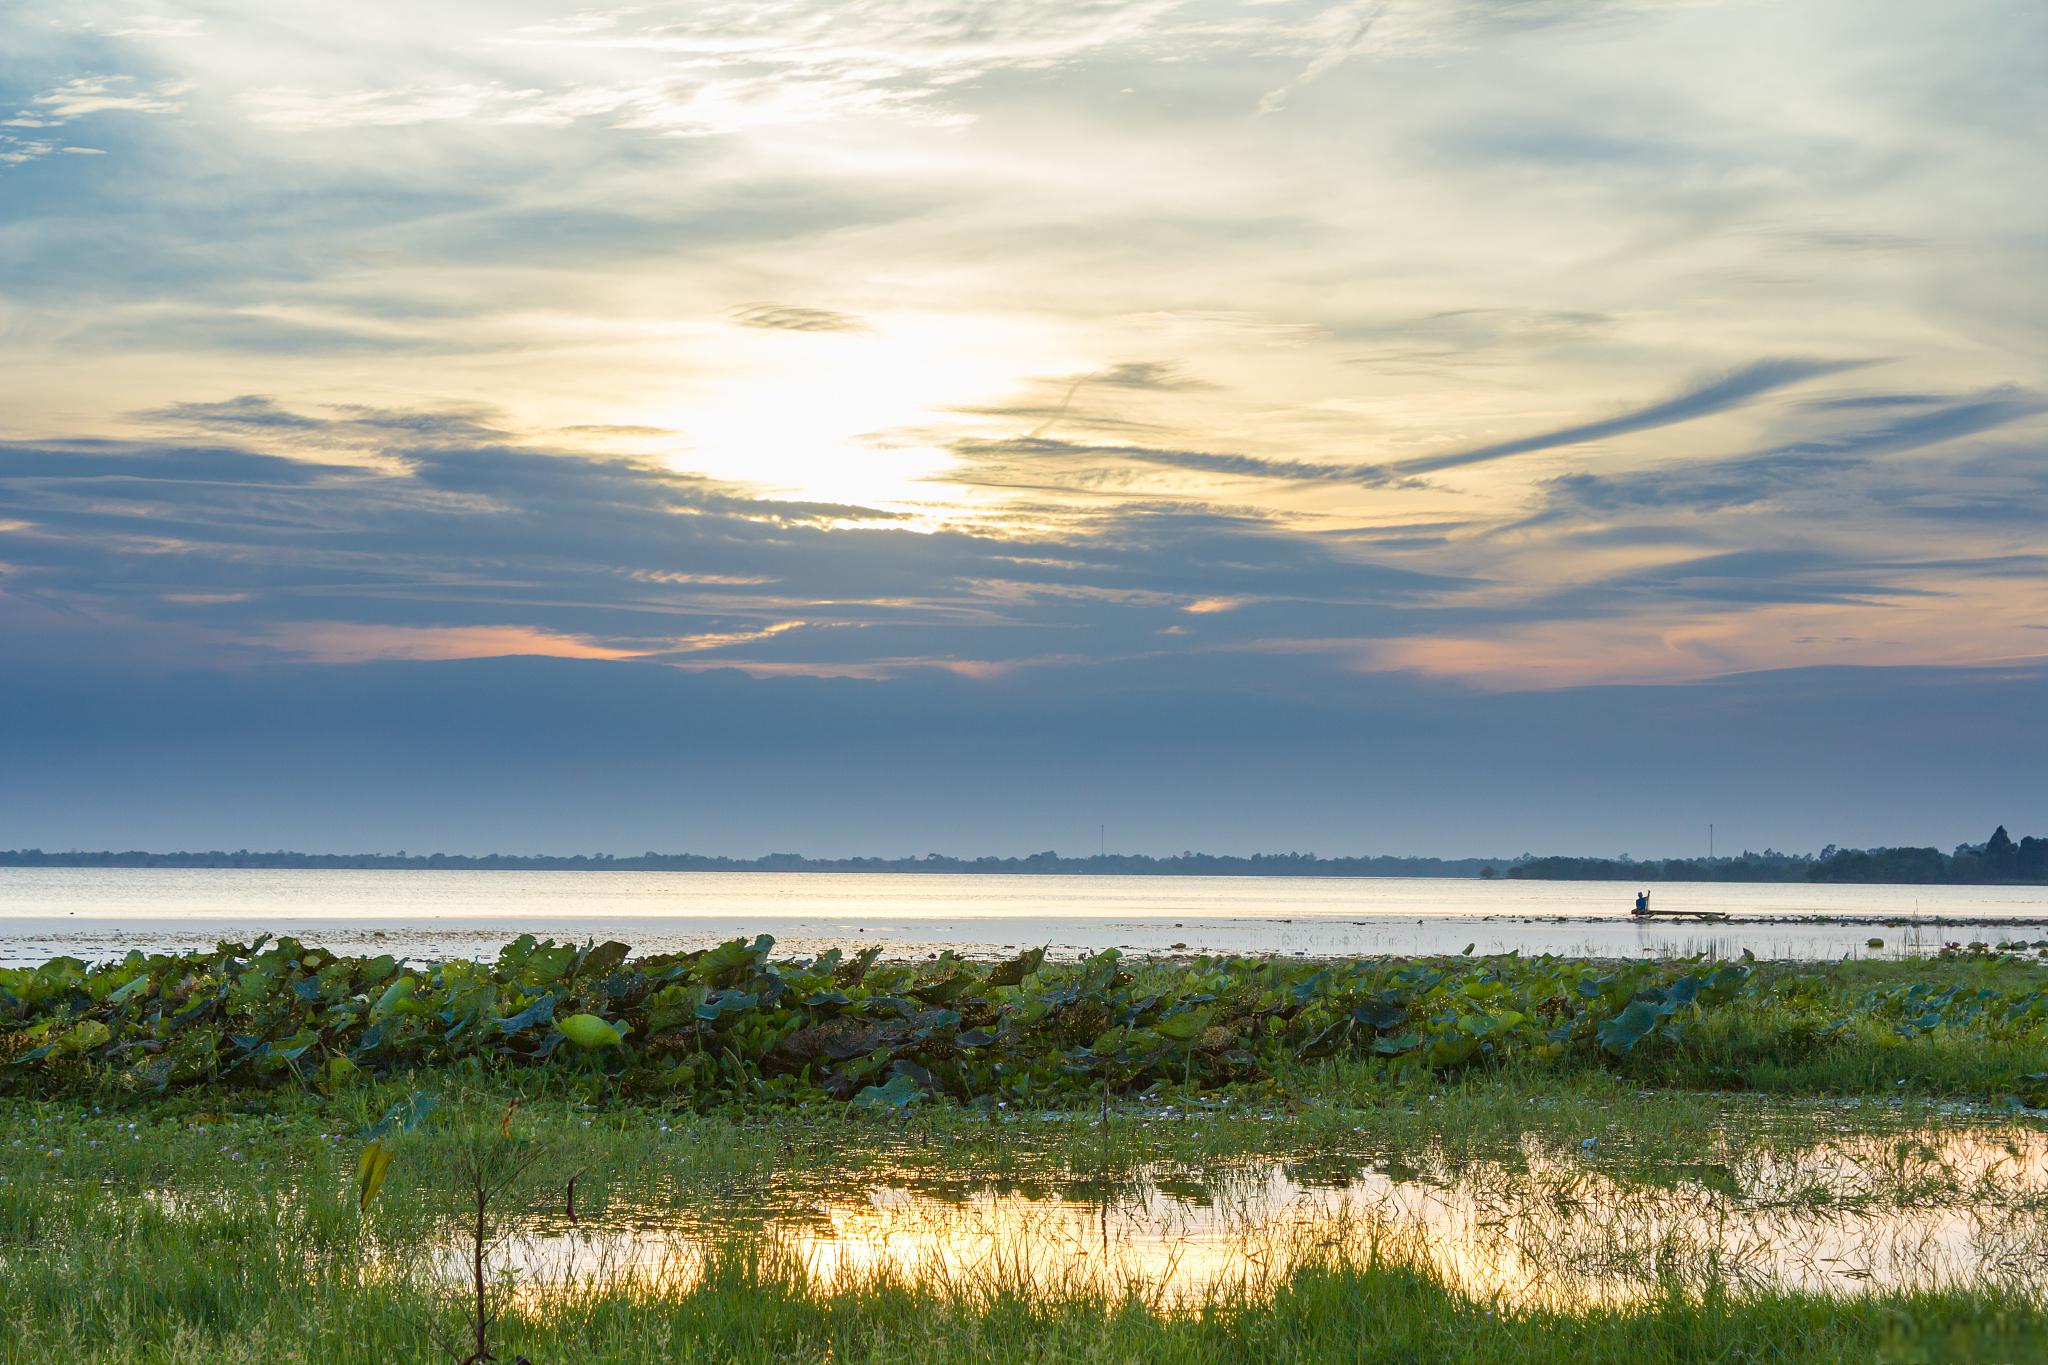 鄱阳湖草海,大自然赋予的一首优美的诗篇 鄱阳湖,那片草海,就像是被